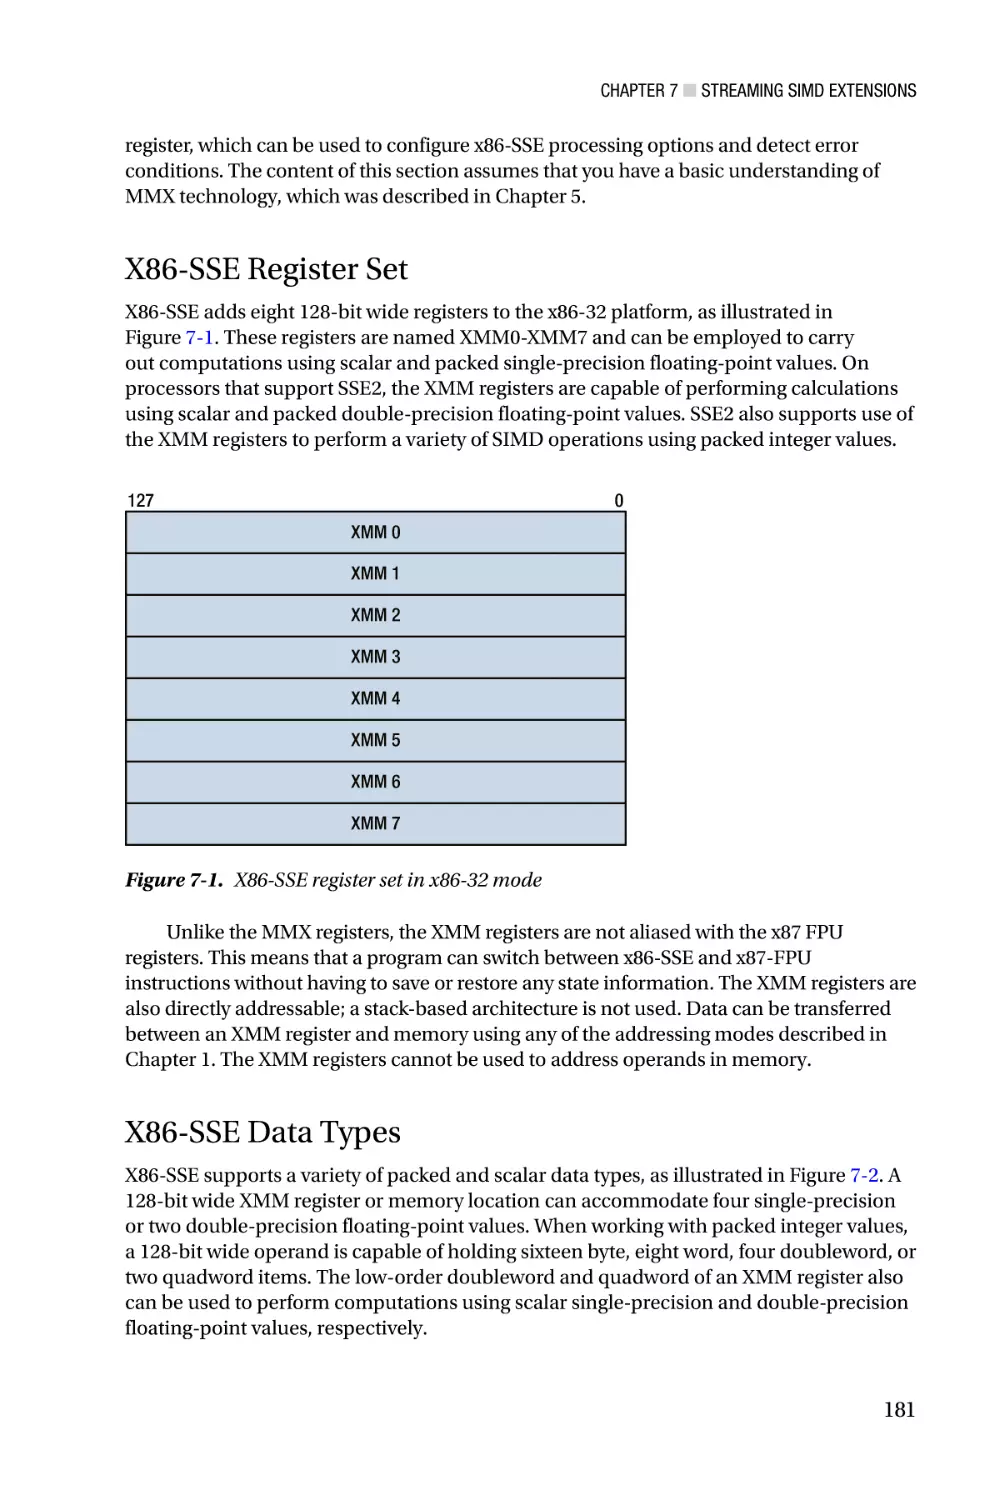 X86-SSE Register Set
X86-SSE Data Types